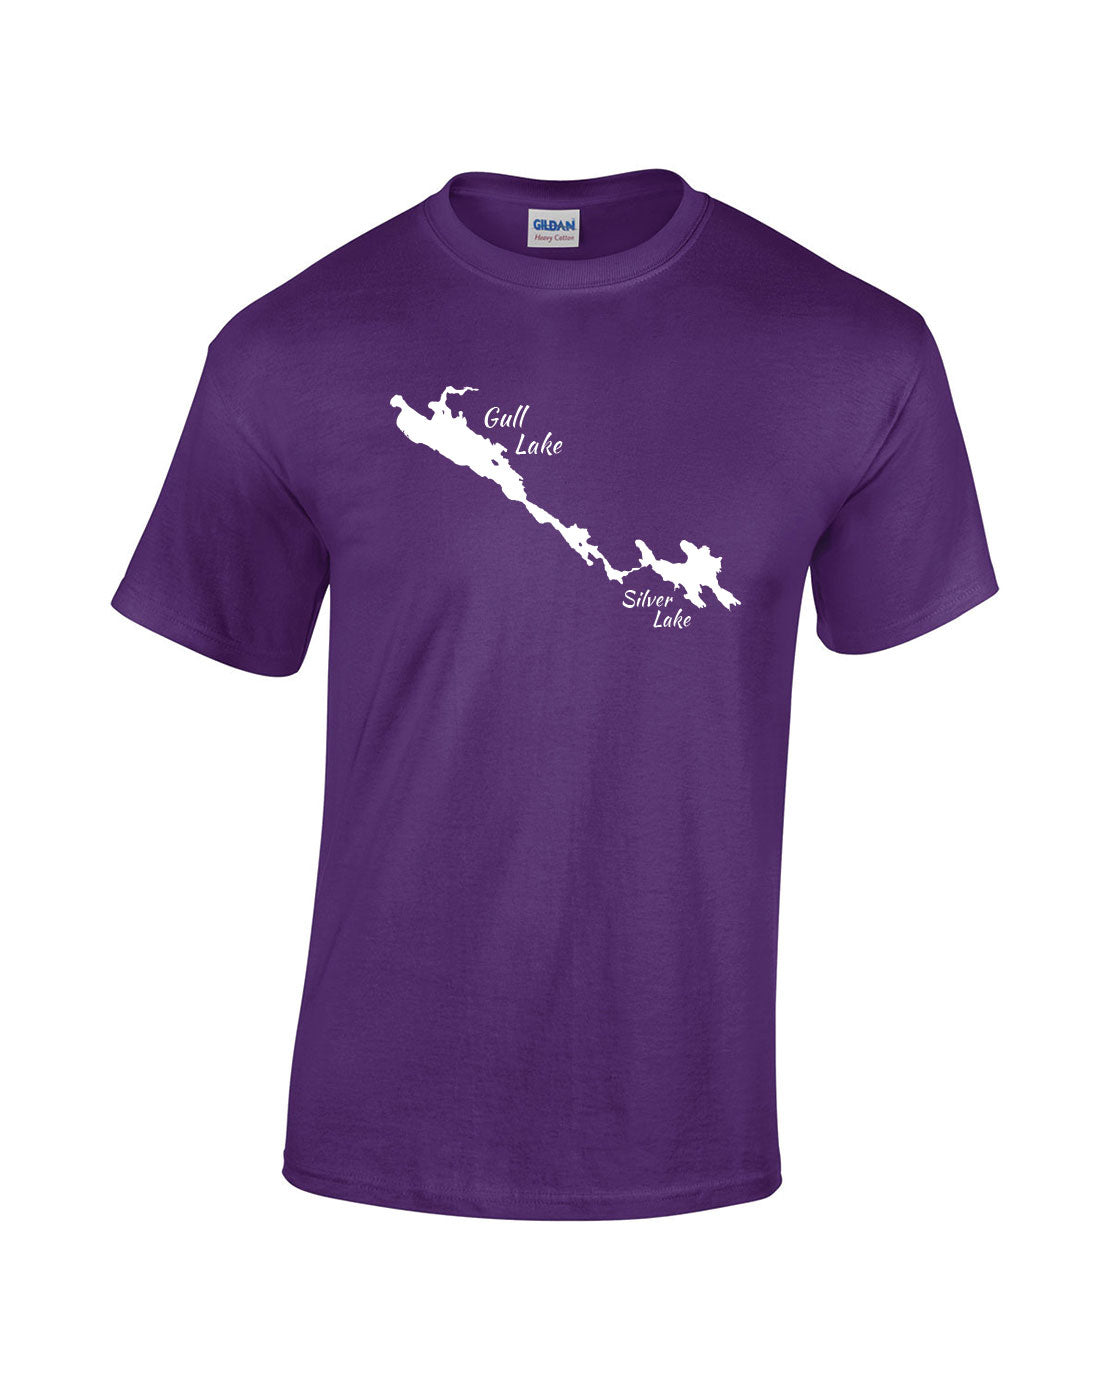 Gull Lake T-Shirt